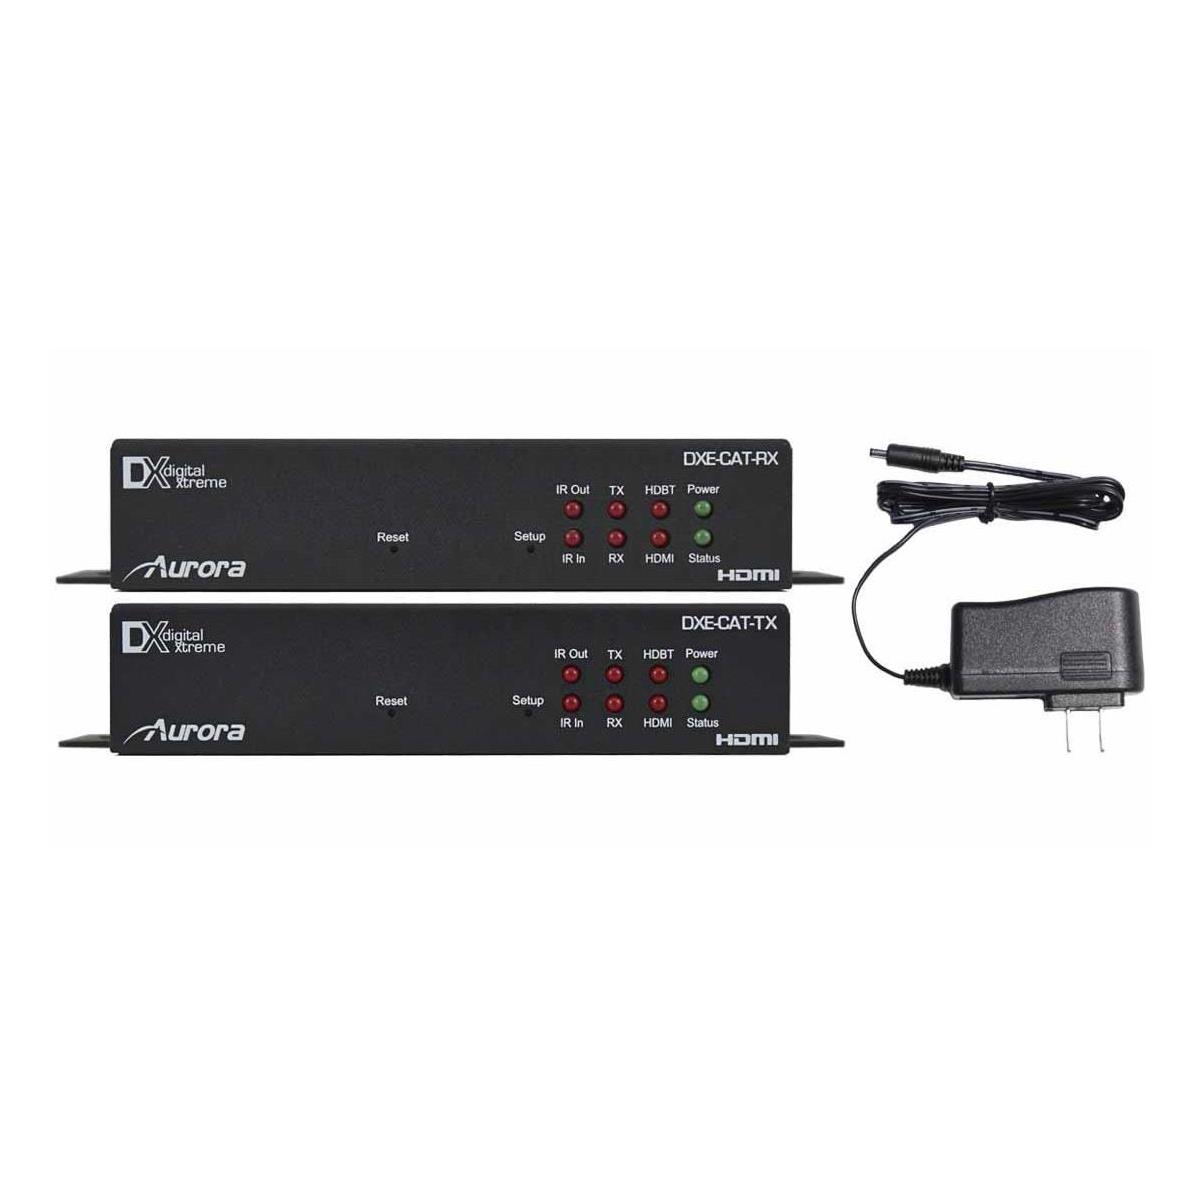 

Aurora Multimedia 330' HDMI HDBaseT CAT Extender Set with Dual LAN